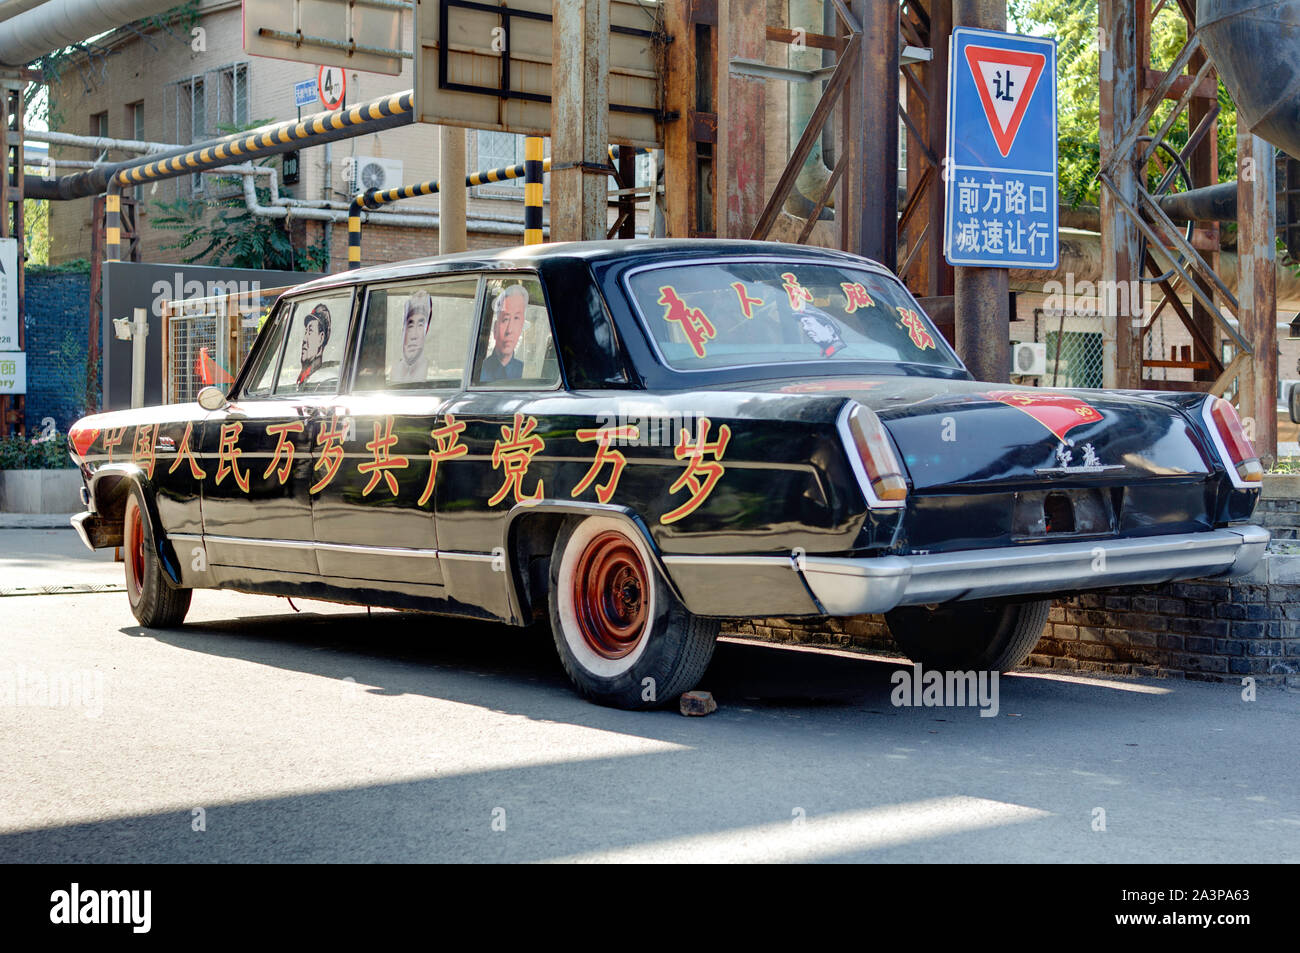 Il vecchio partito comunista auto in arte 798 disctict Pechino Foto Stock